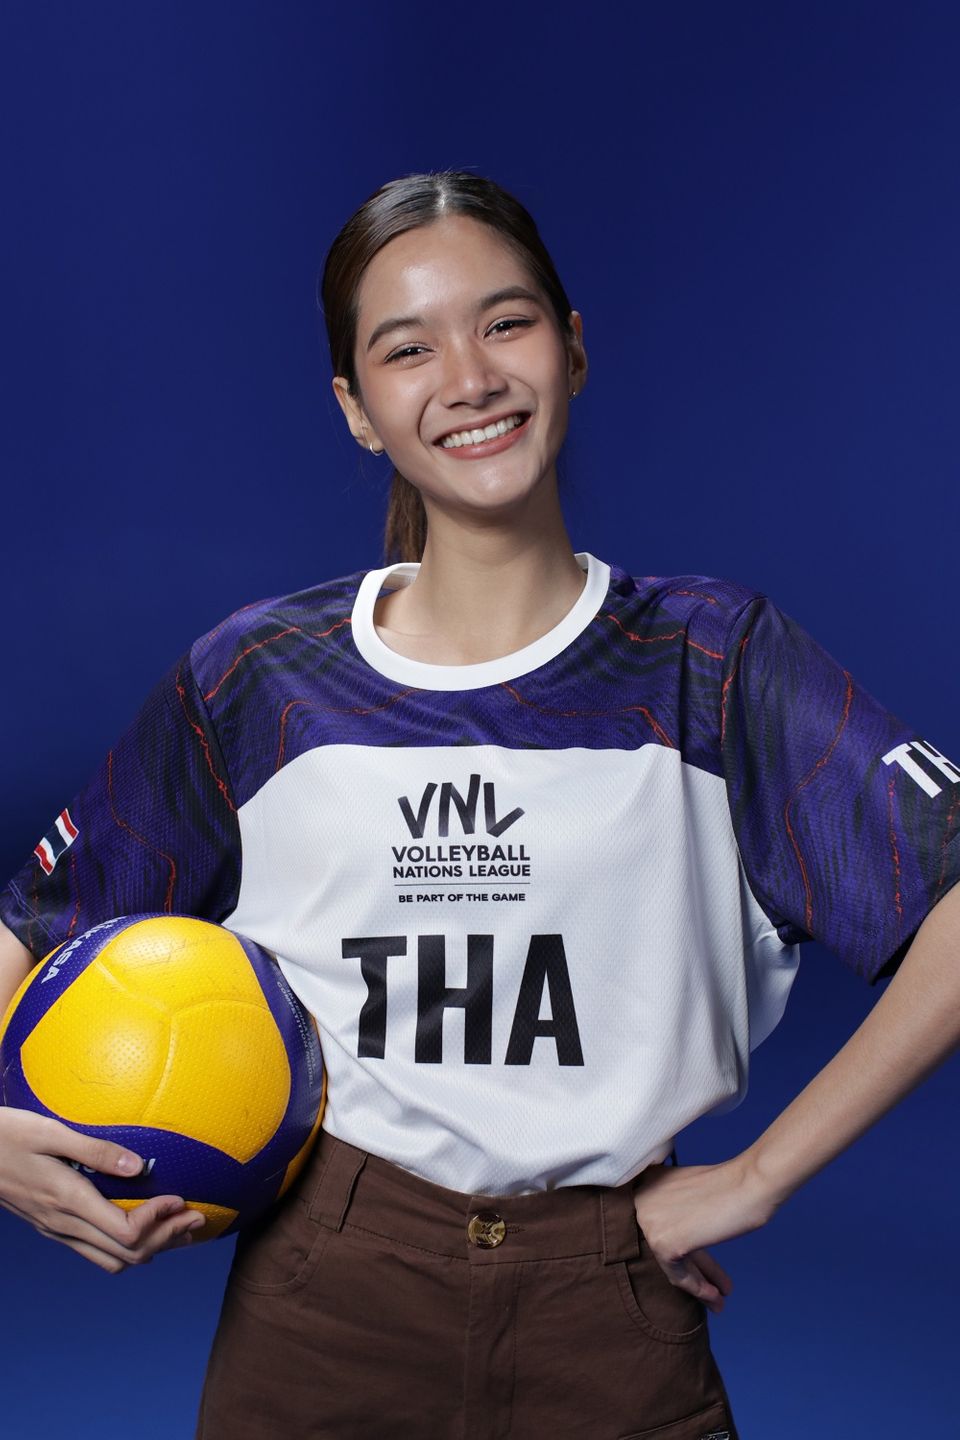 เชียร์ Volleyball Nations League 2023 ให้กระหึ่มโลก ช่อง 7HD - เทโรฯ ชวนเอฟซีสวมเสื้อทีมโปรด